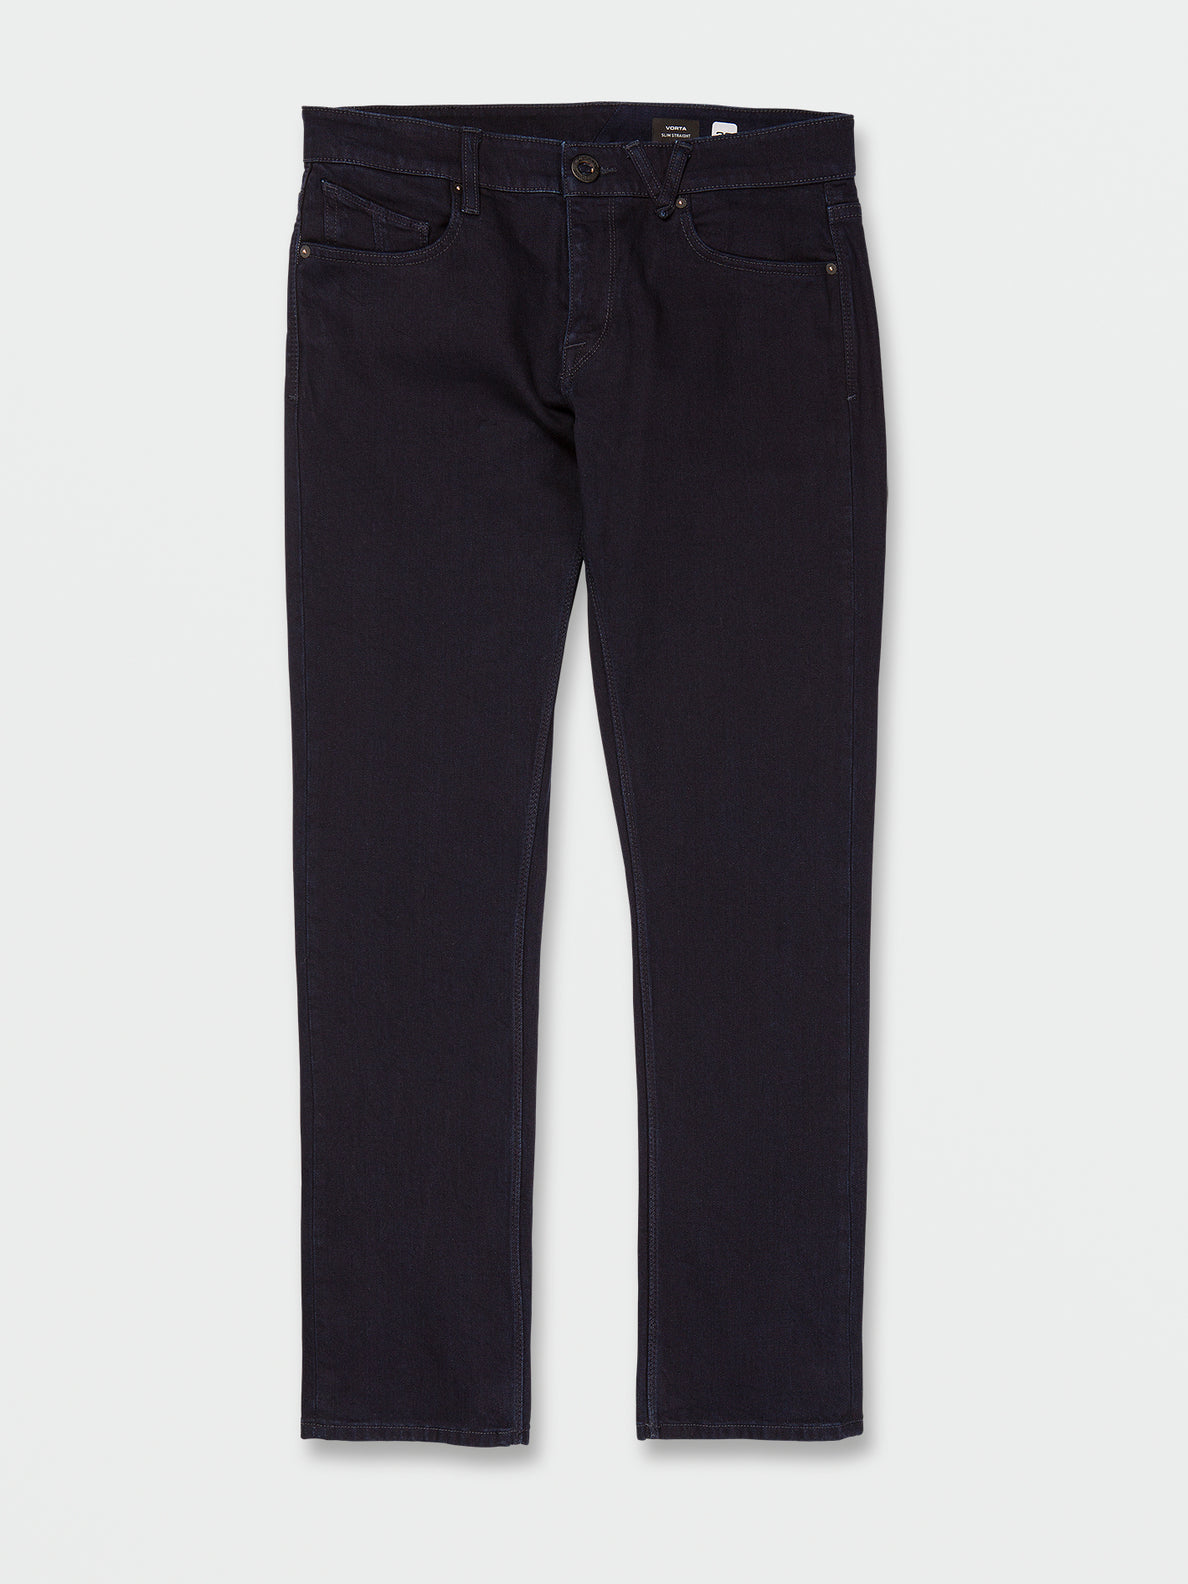 Vorta Slim Fit Jeans - Twilight Black (A1912302_TWI) [F]